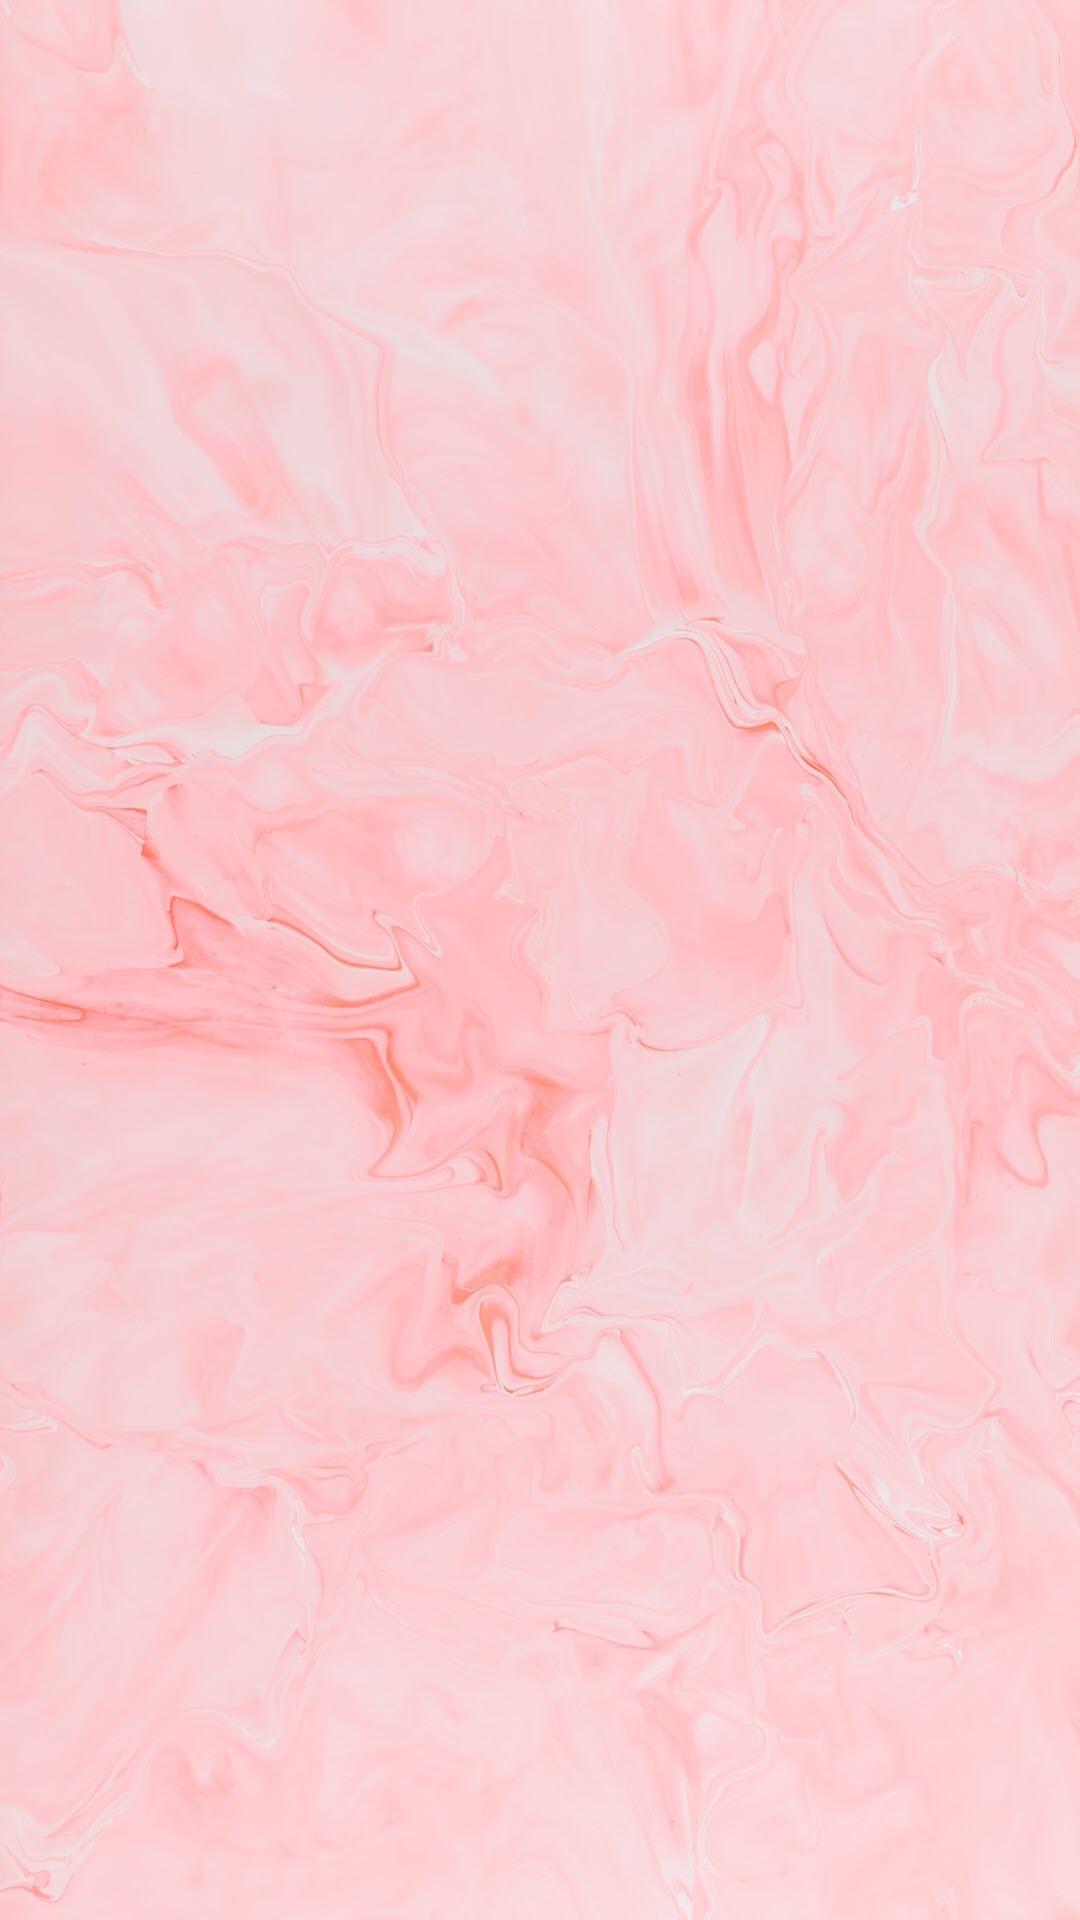 Tải về 100+ hình nền màu hồng (Pink) cho điện thoại đẹp nhất